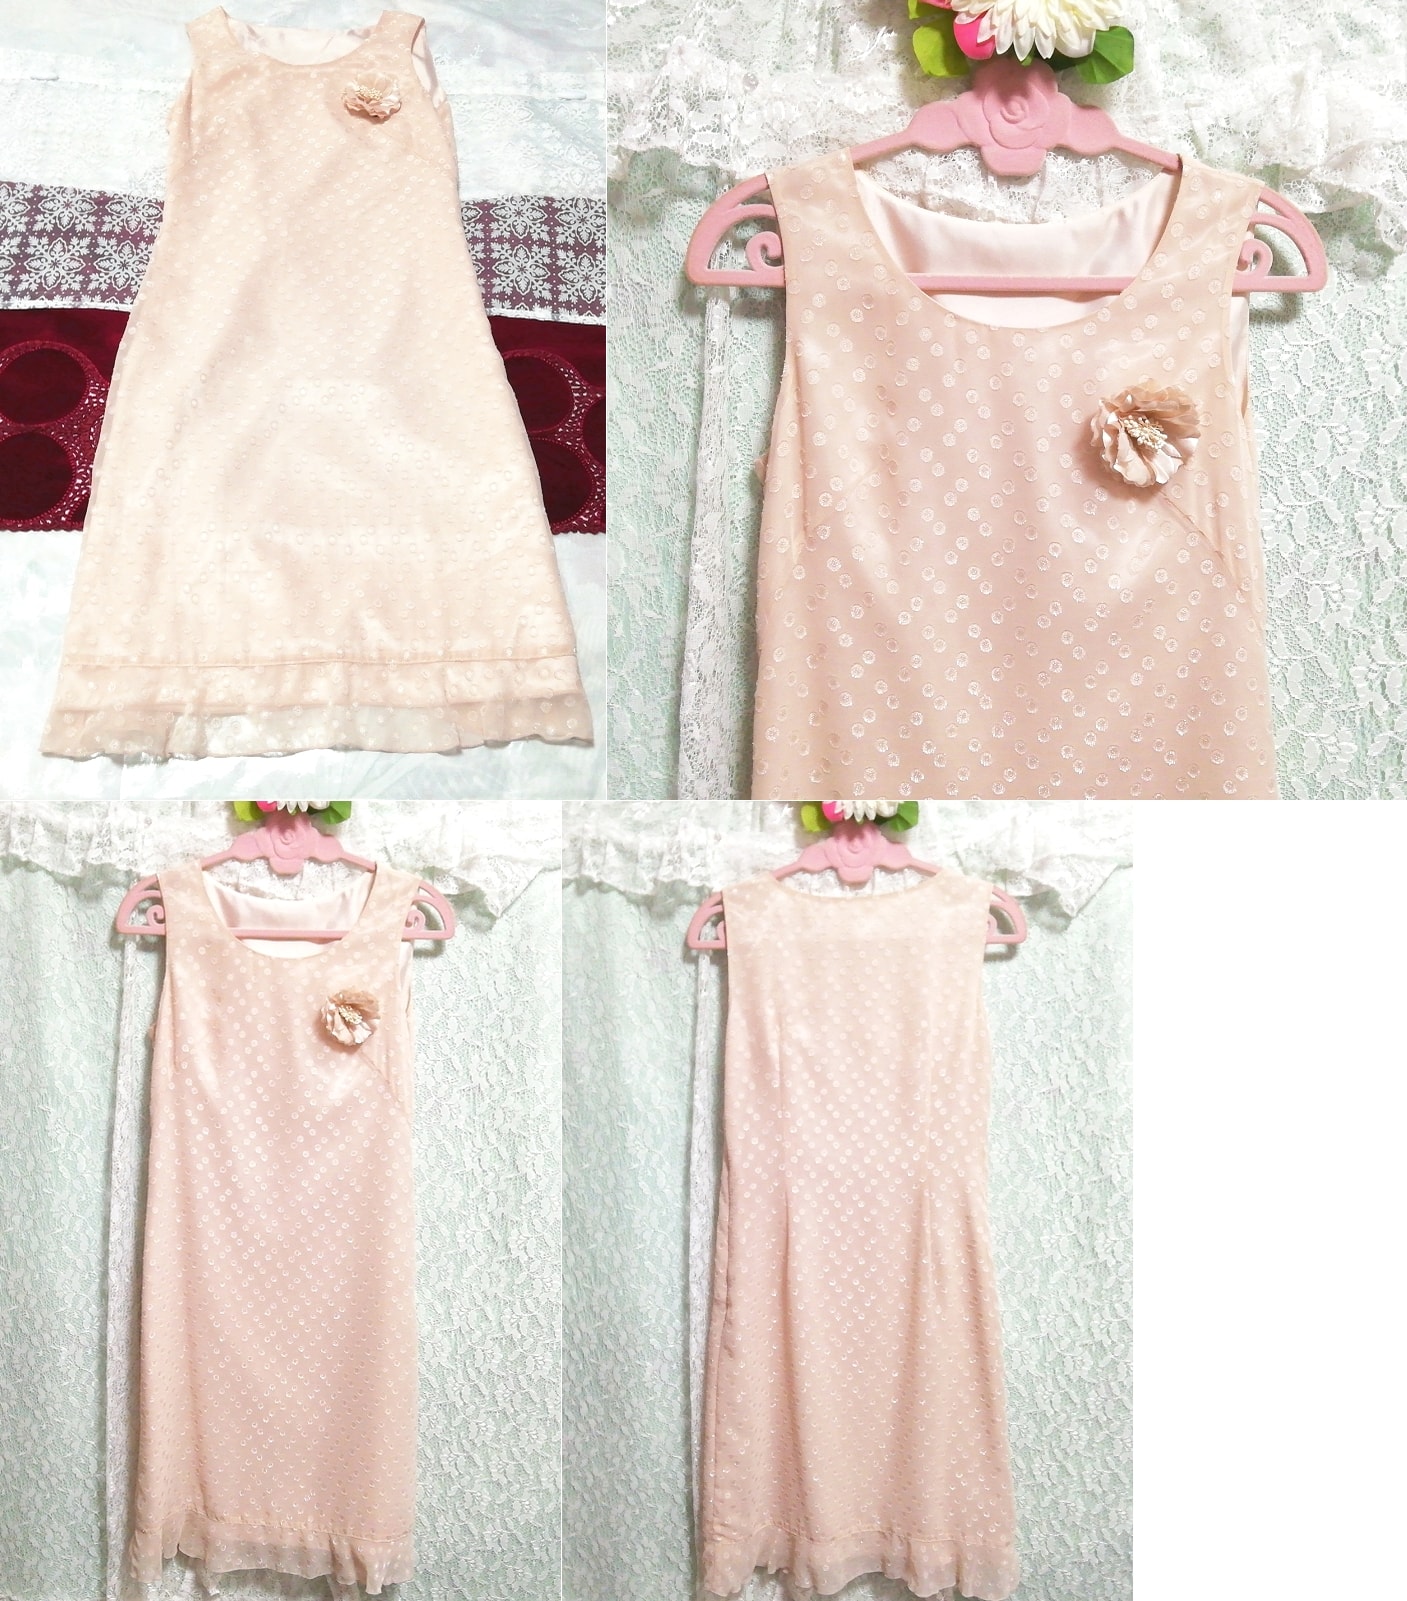 亚麻粉色玫瑰胸花雪纺睡衣无袖一件式连衣裙, 时尚, 女士时装, 睡衣